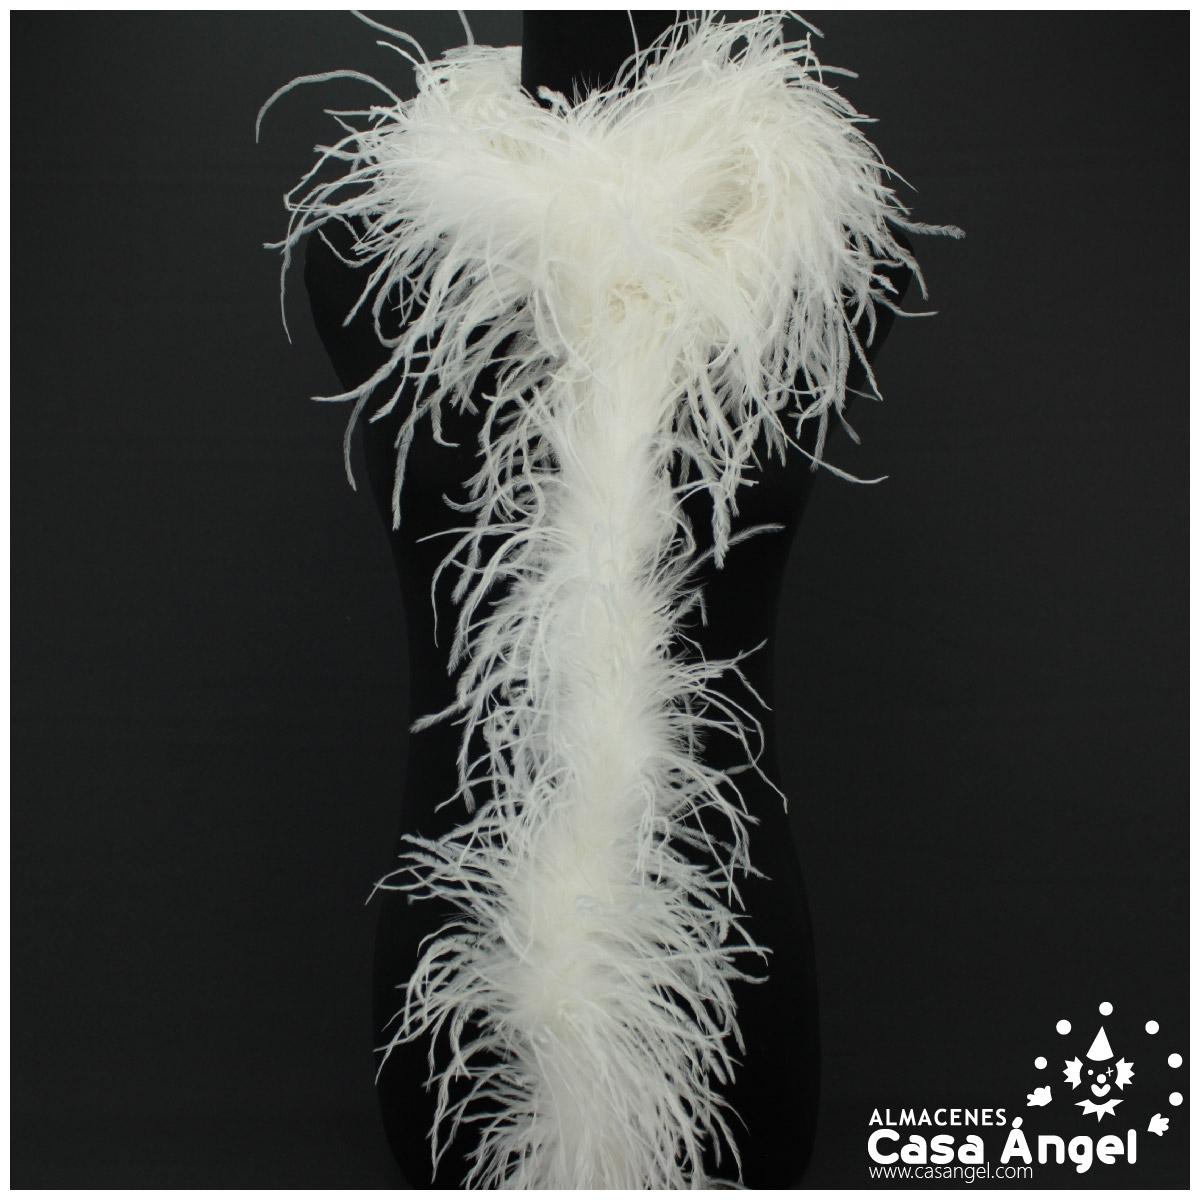 A Touch Luxurious Boas de plumas de avestruz blancas de 12 capas Glamorous  Events